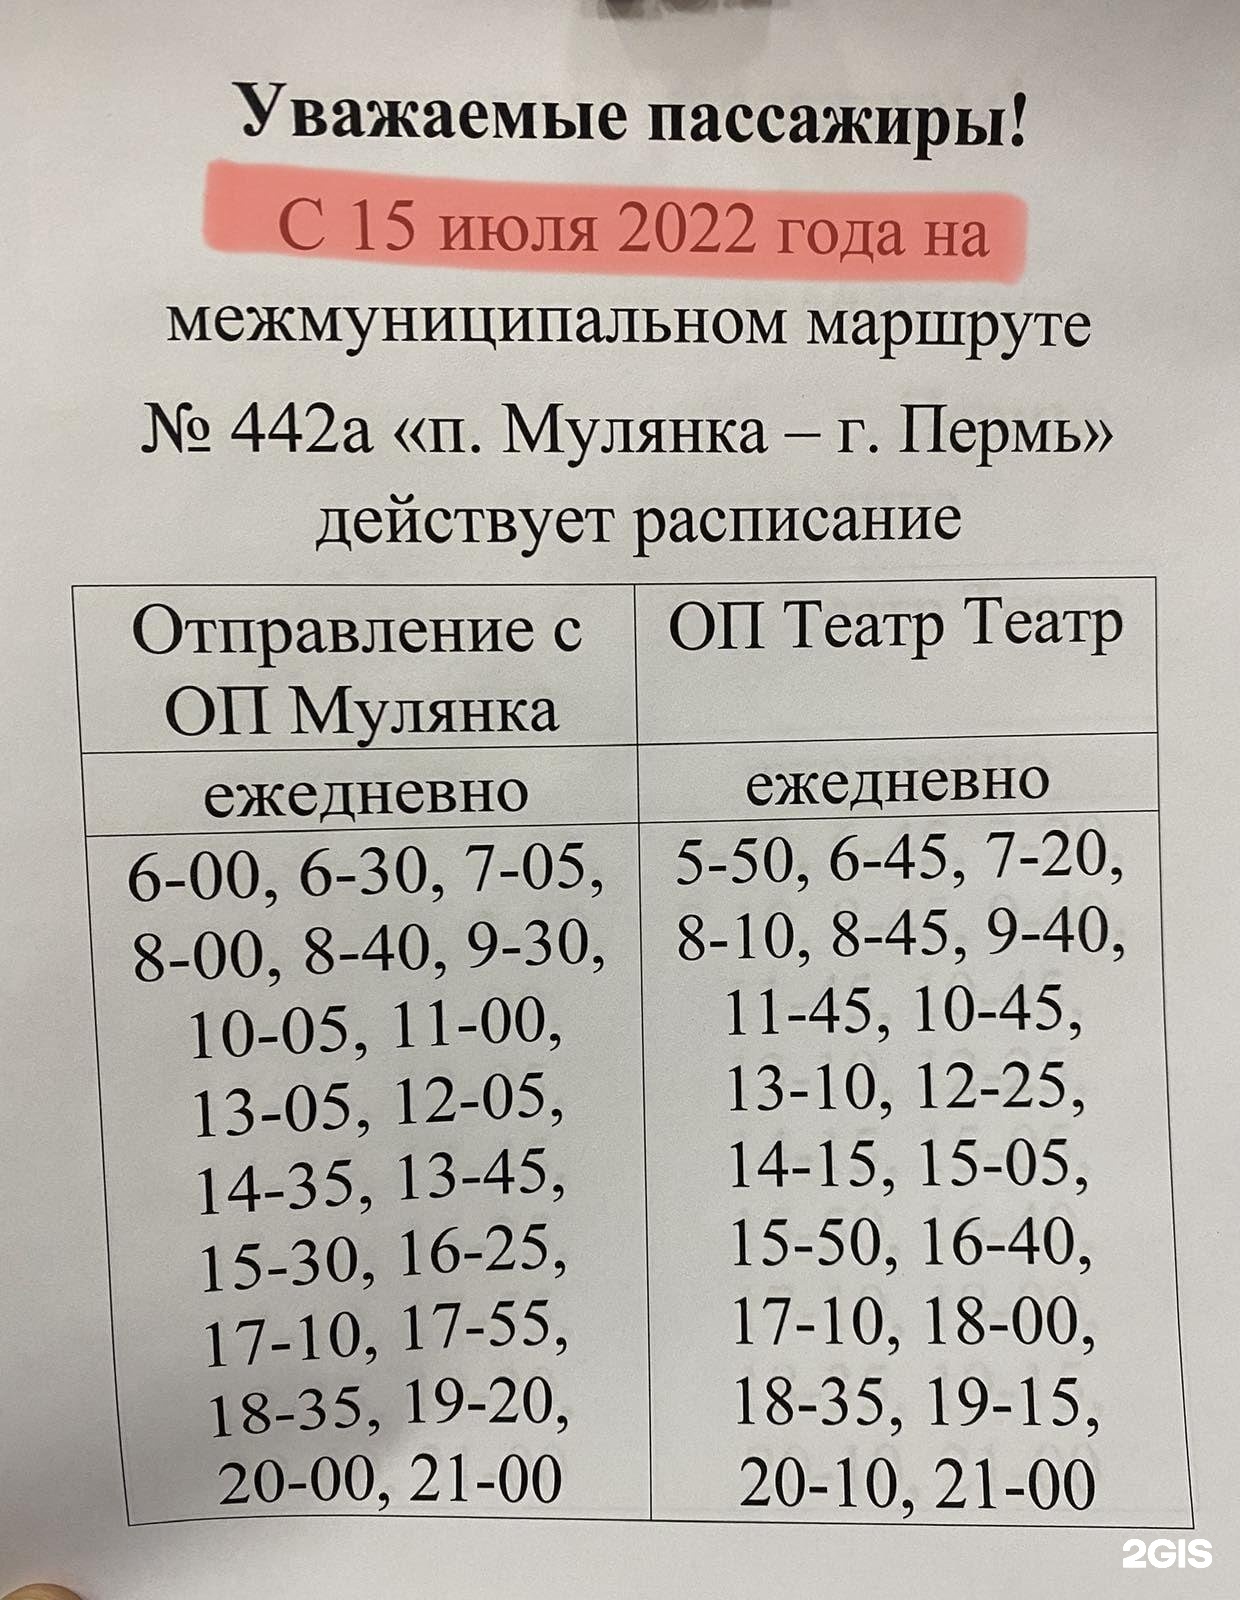 Пермь мулянка автобус расписание